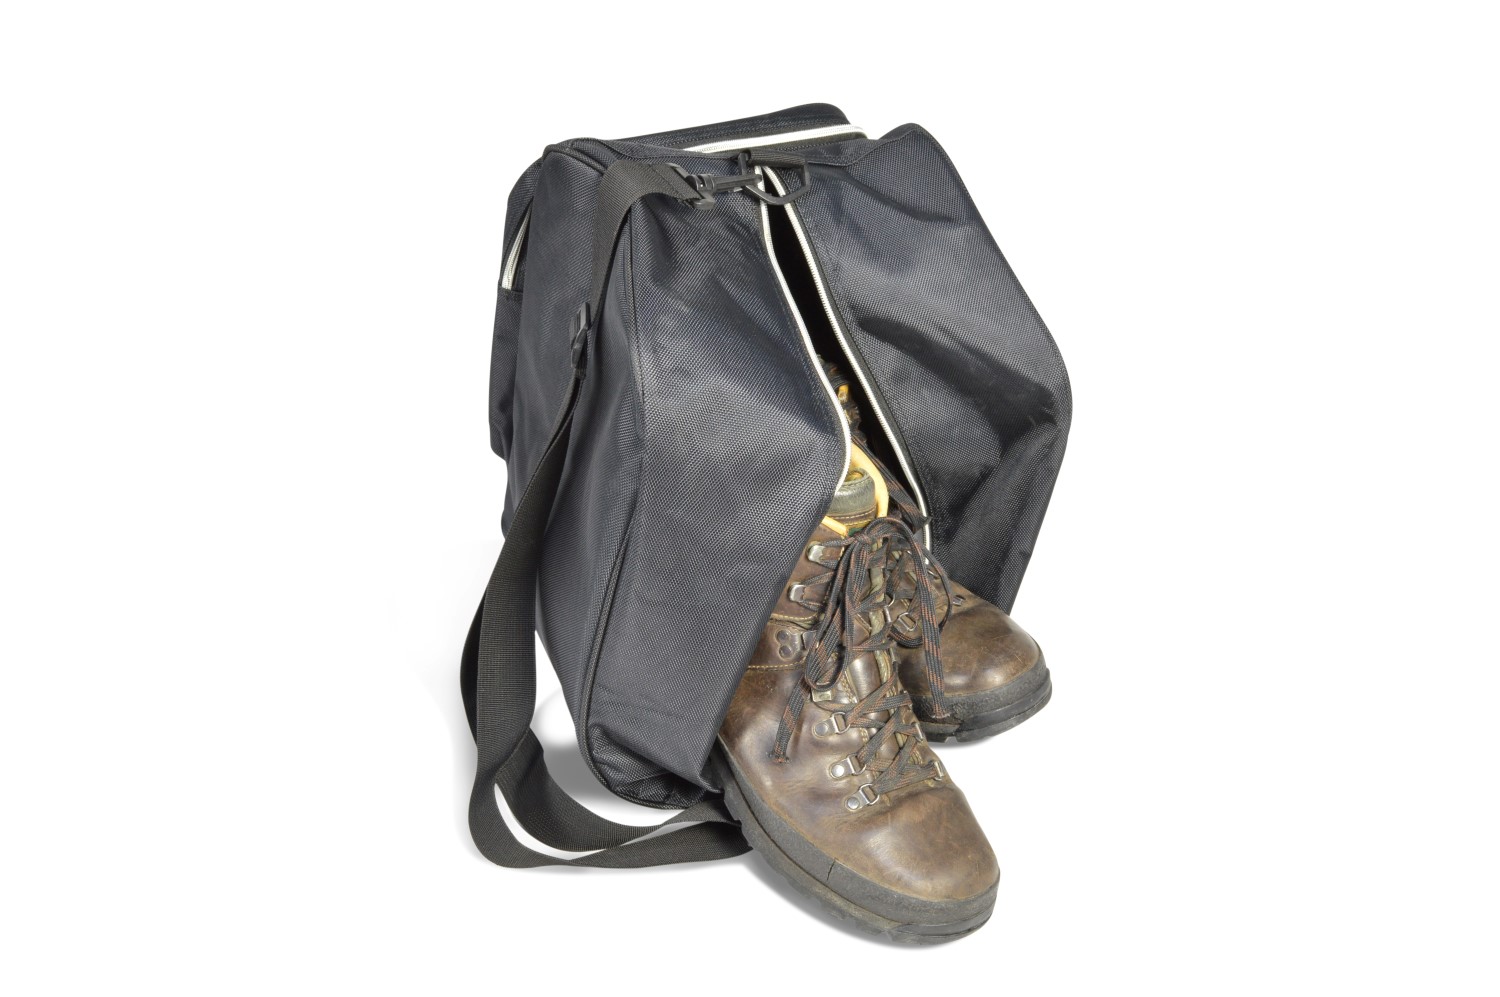 Boot Bag sac à chaussures de ski / sac à chaussures de randonnée